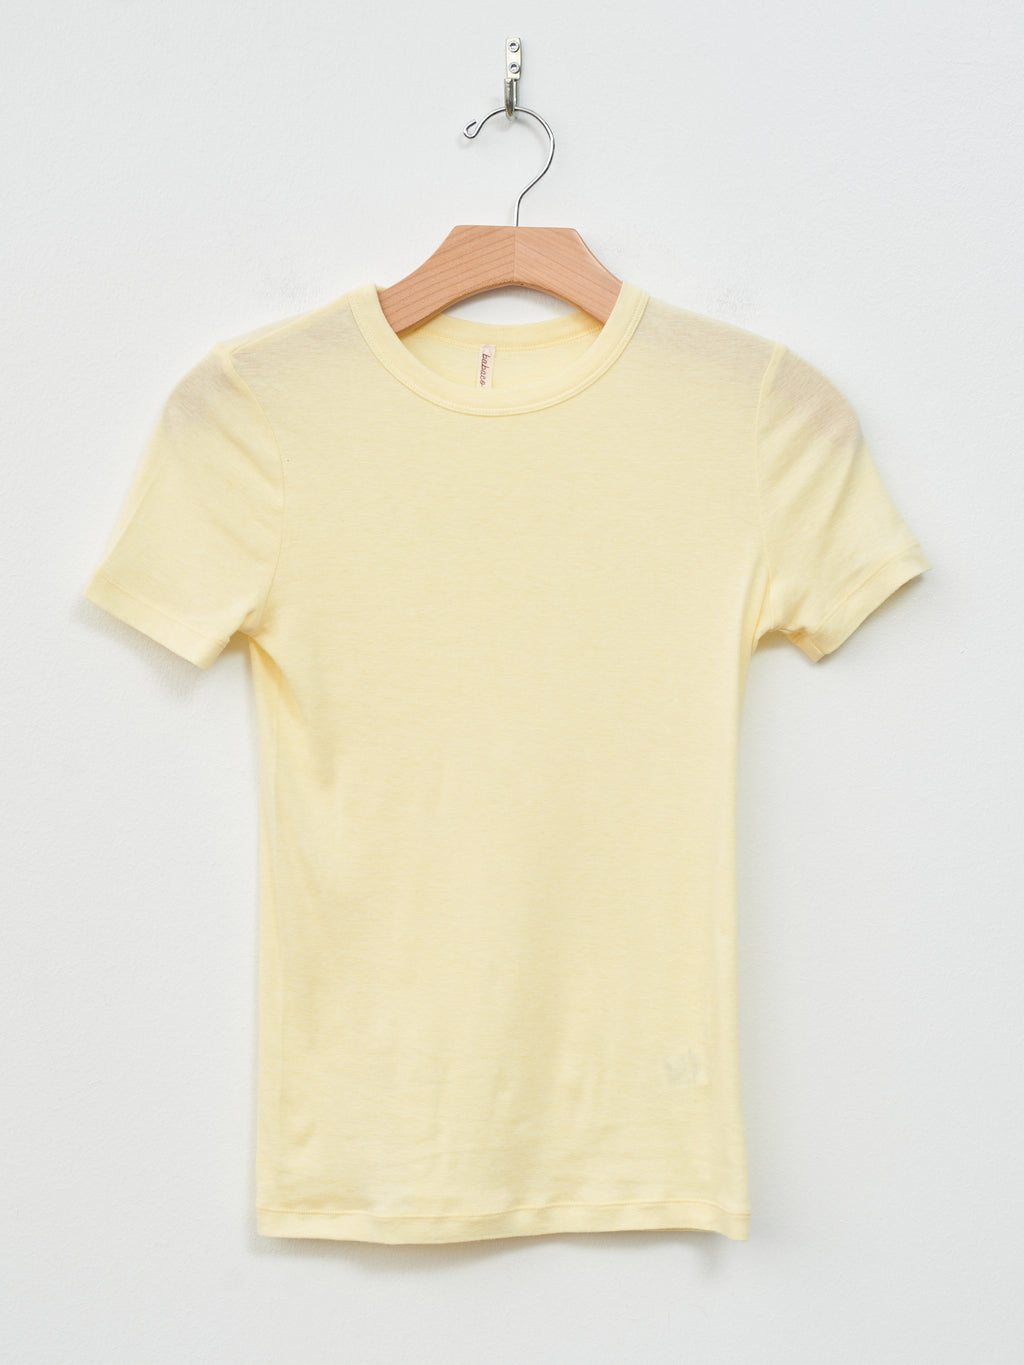 Namu Shop - Babaco Cotton/Silk Basic T-Shirt - Cream